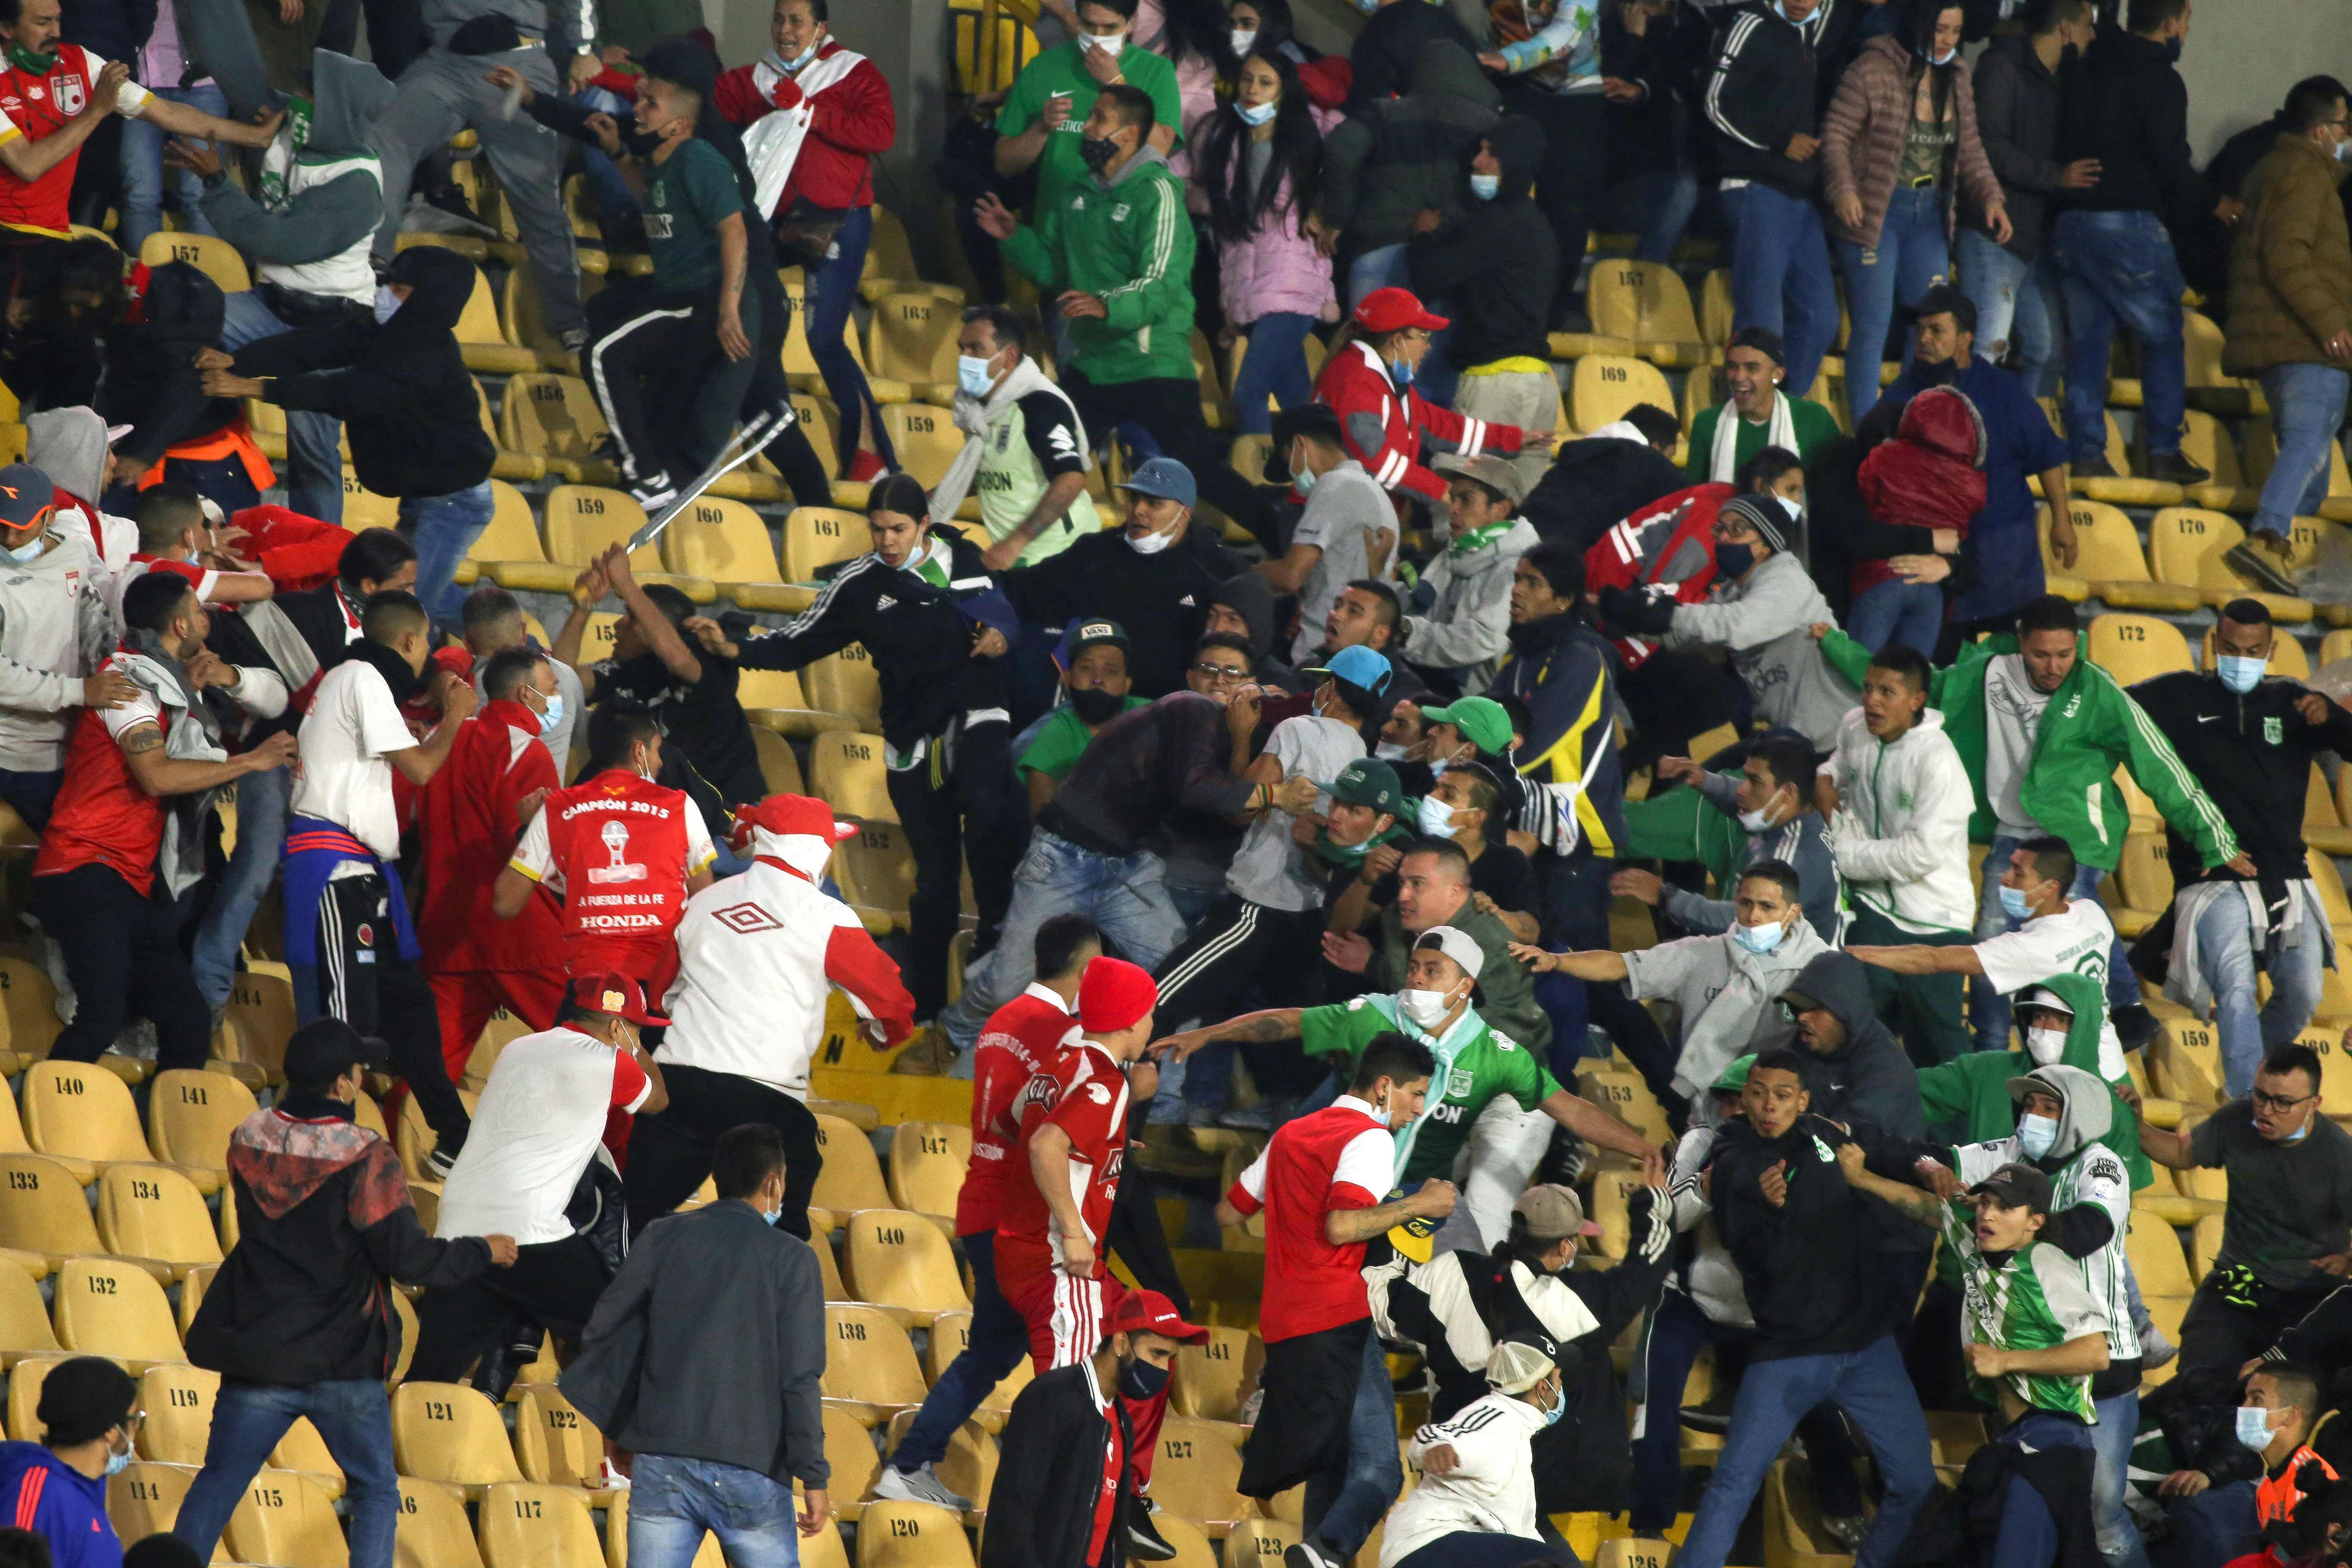 Violencia se registró en vuelta de público en partido de fútbol de liga colombiana en Bogotá